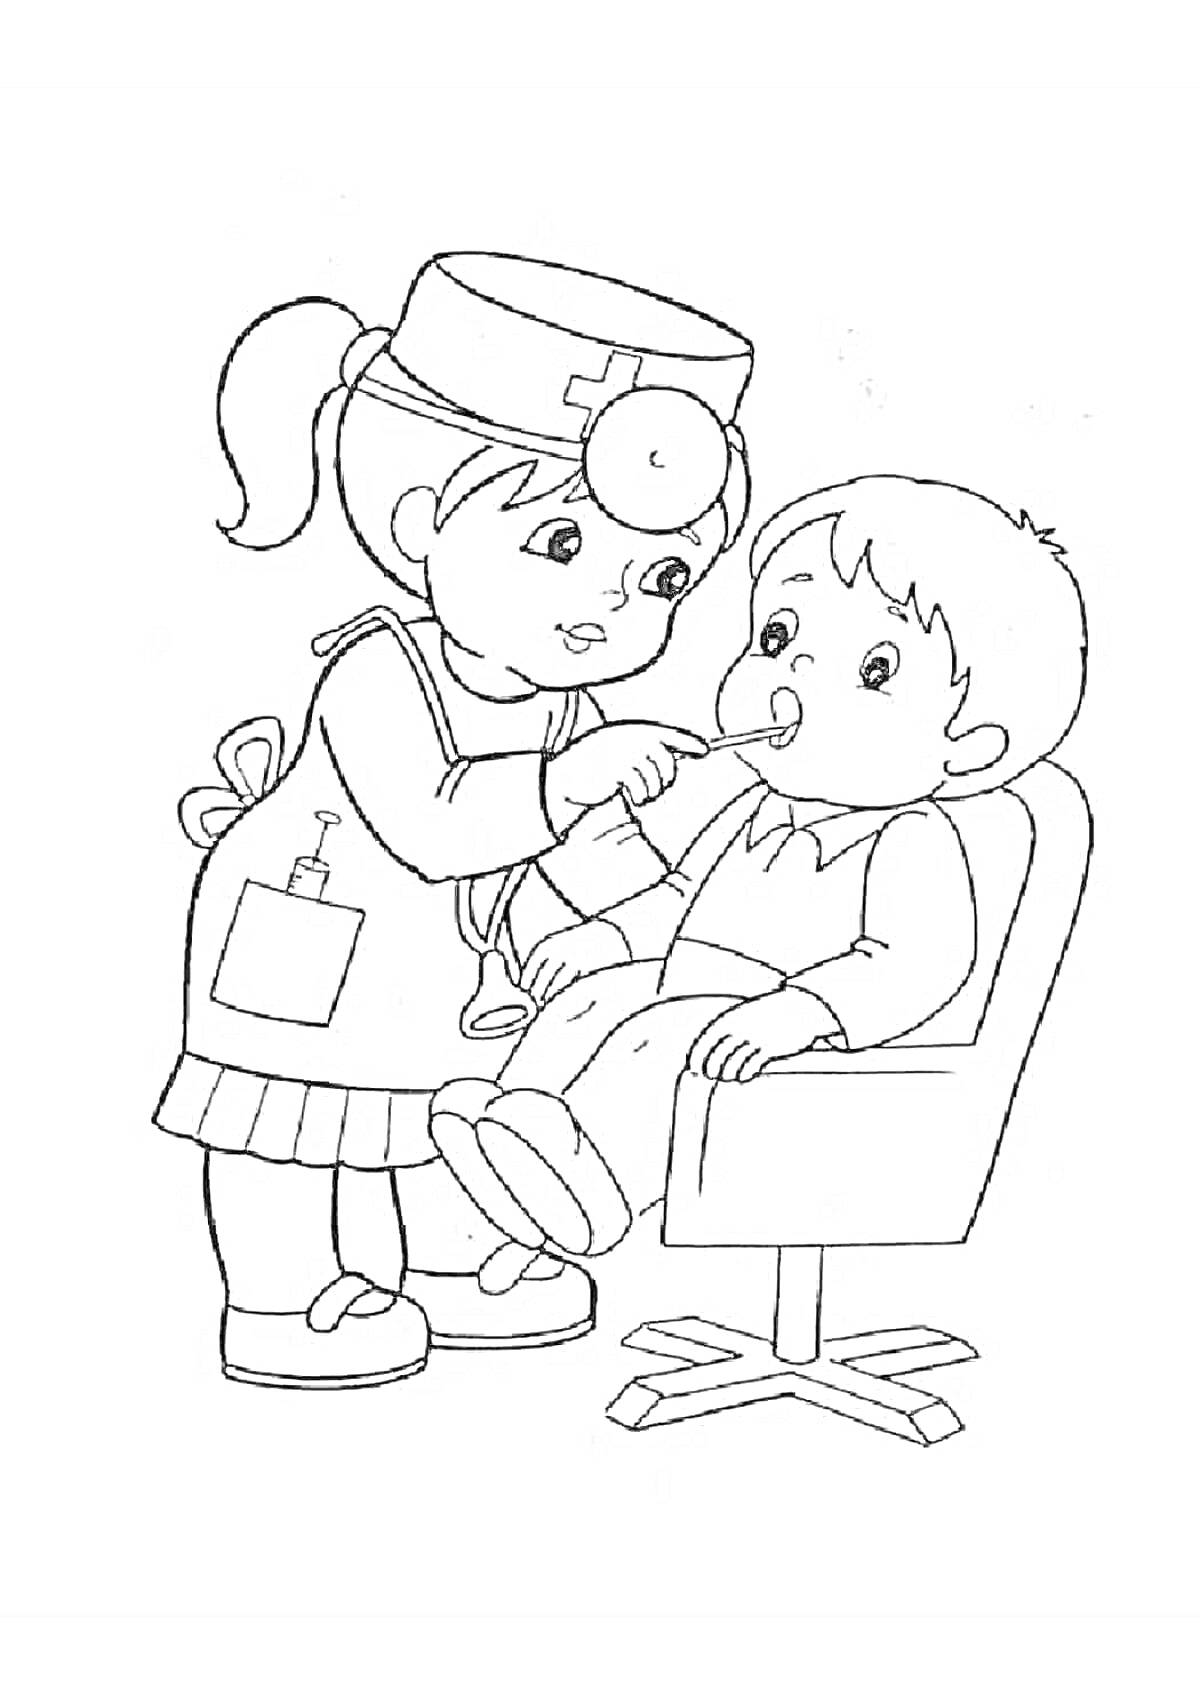 Доктор осматривает ребенка со стетоскопом, ребенок сидит в кресле, доктор в халате с карманом и медсестринской шапочкой